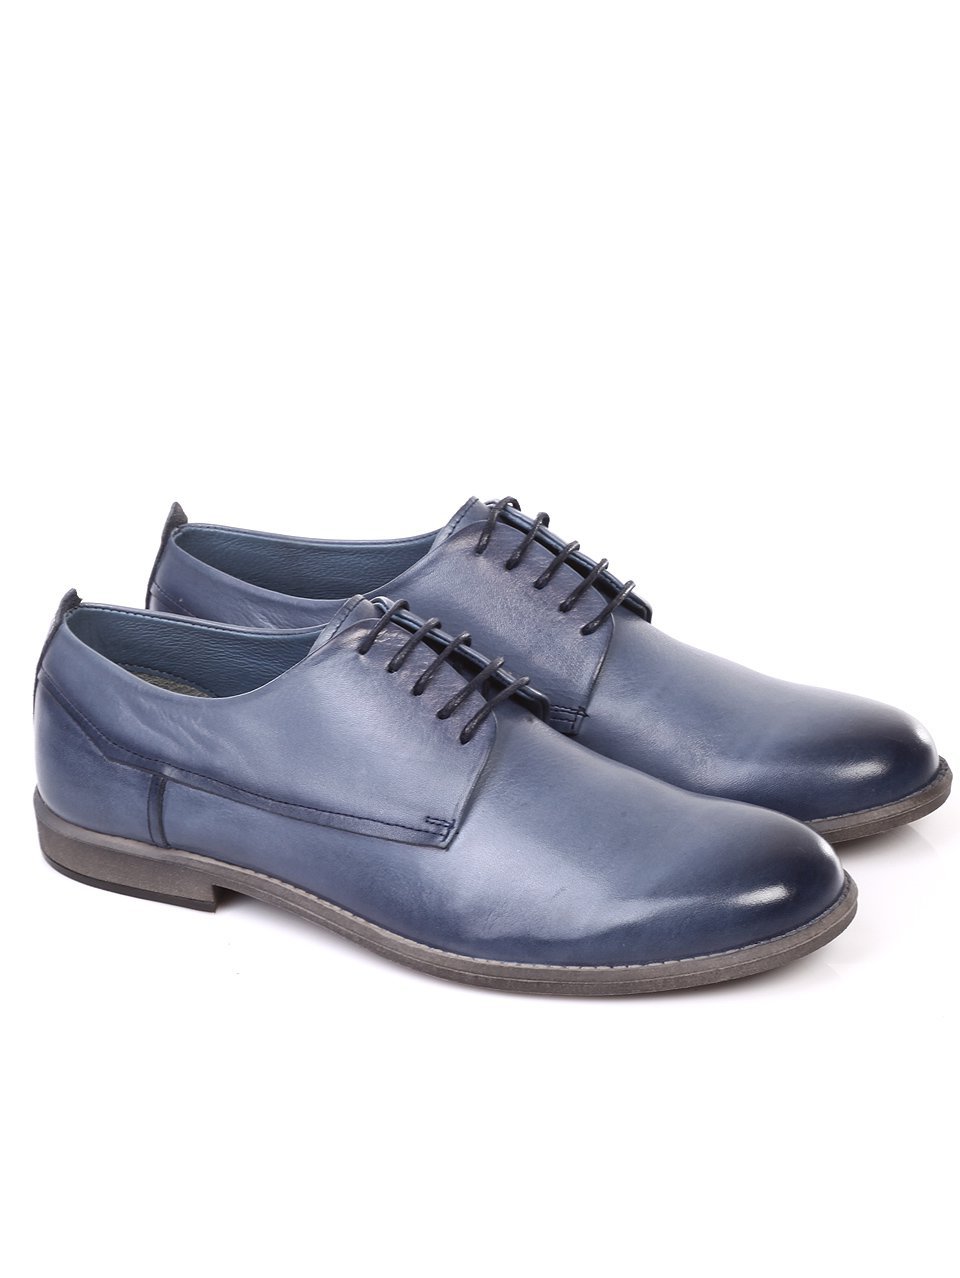 Ежедневни мъжки обувки от естествена кожа в синьо 7AT-18559 blue